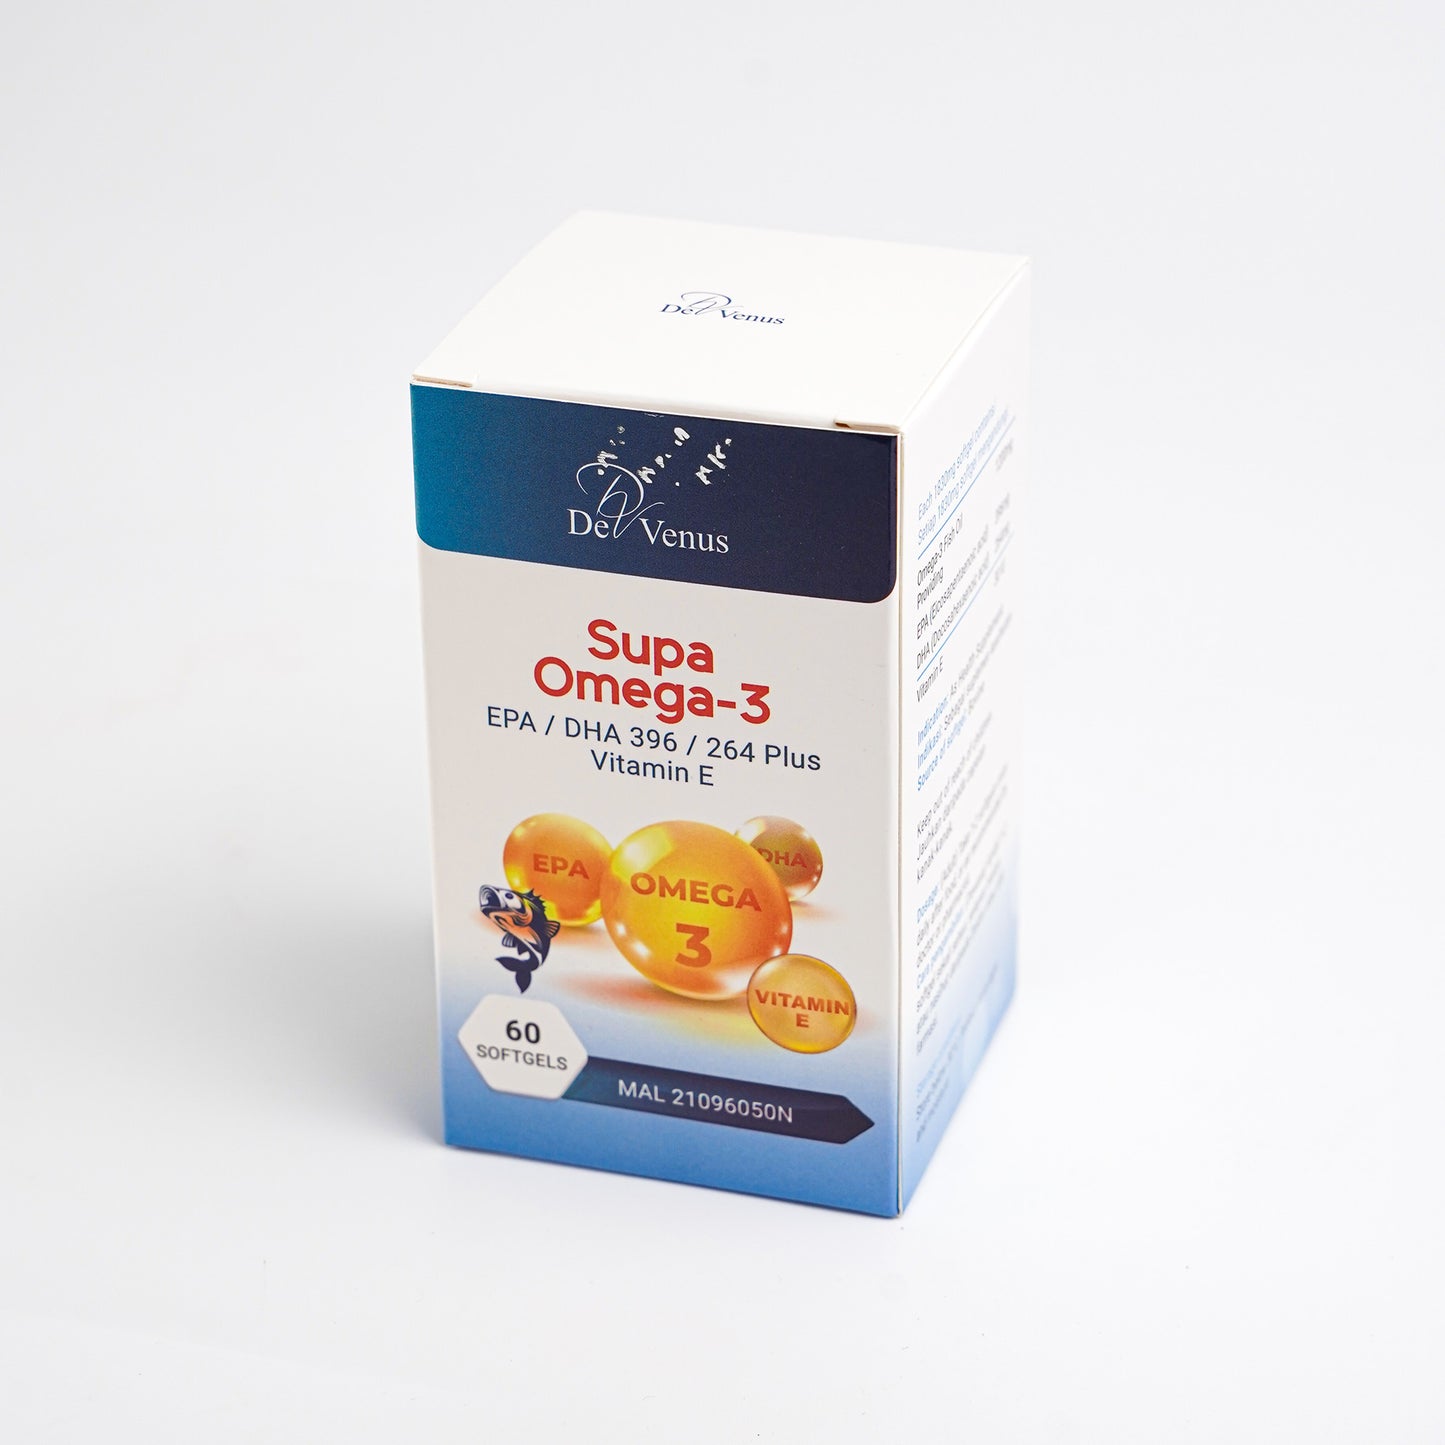 De Venus Supa Omega-3 Fish Oil Plus Vitamin E 30IU 60 Softgels